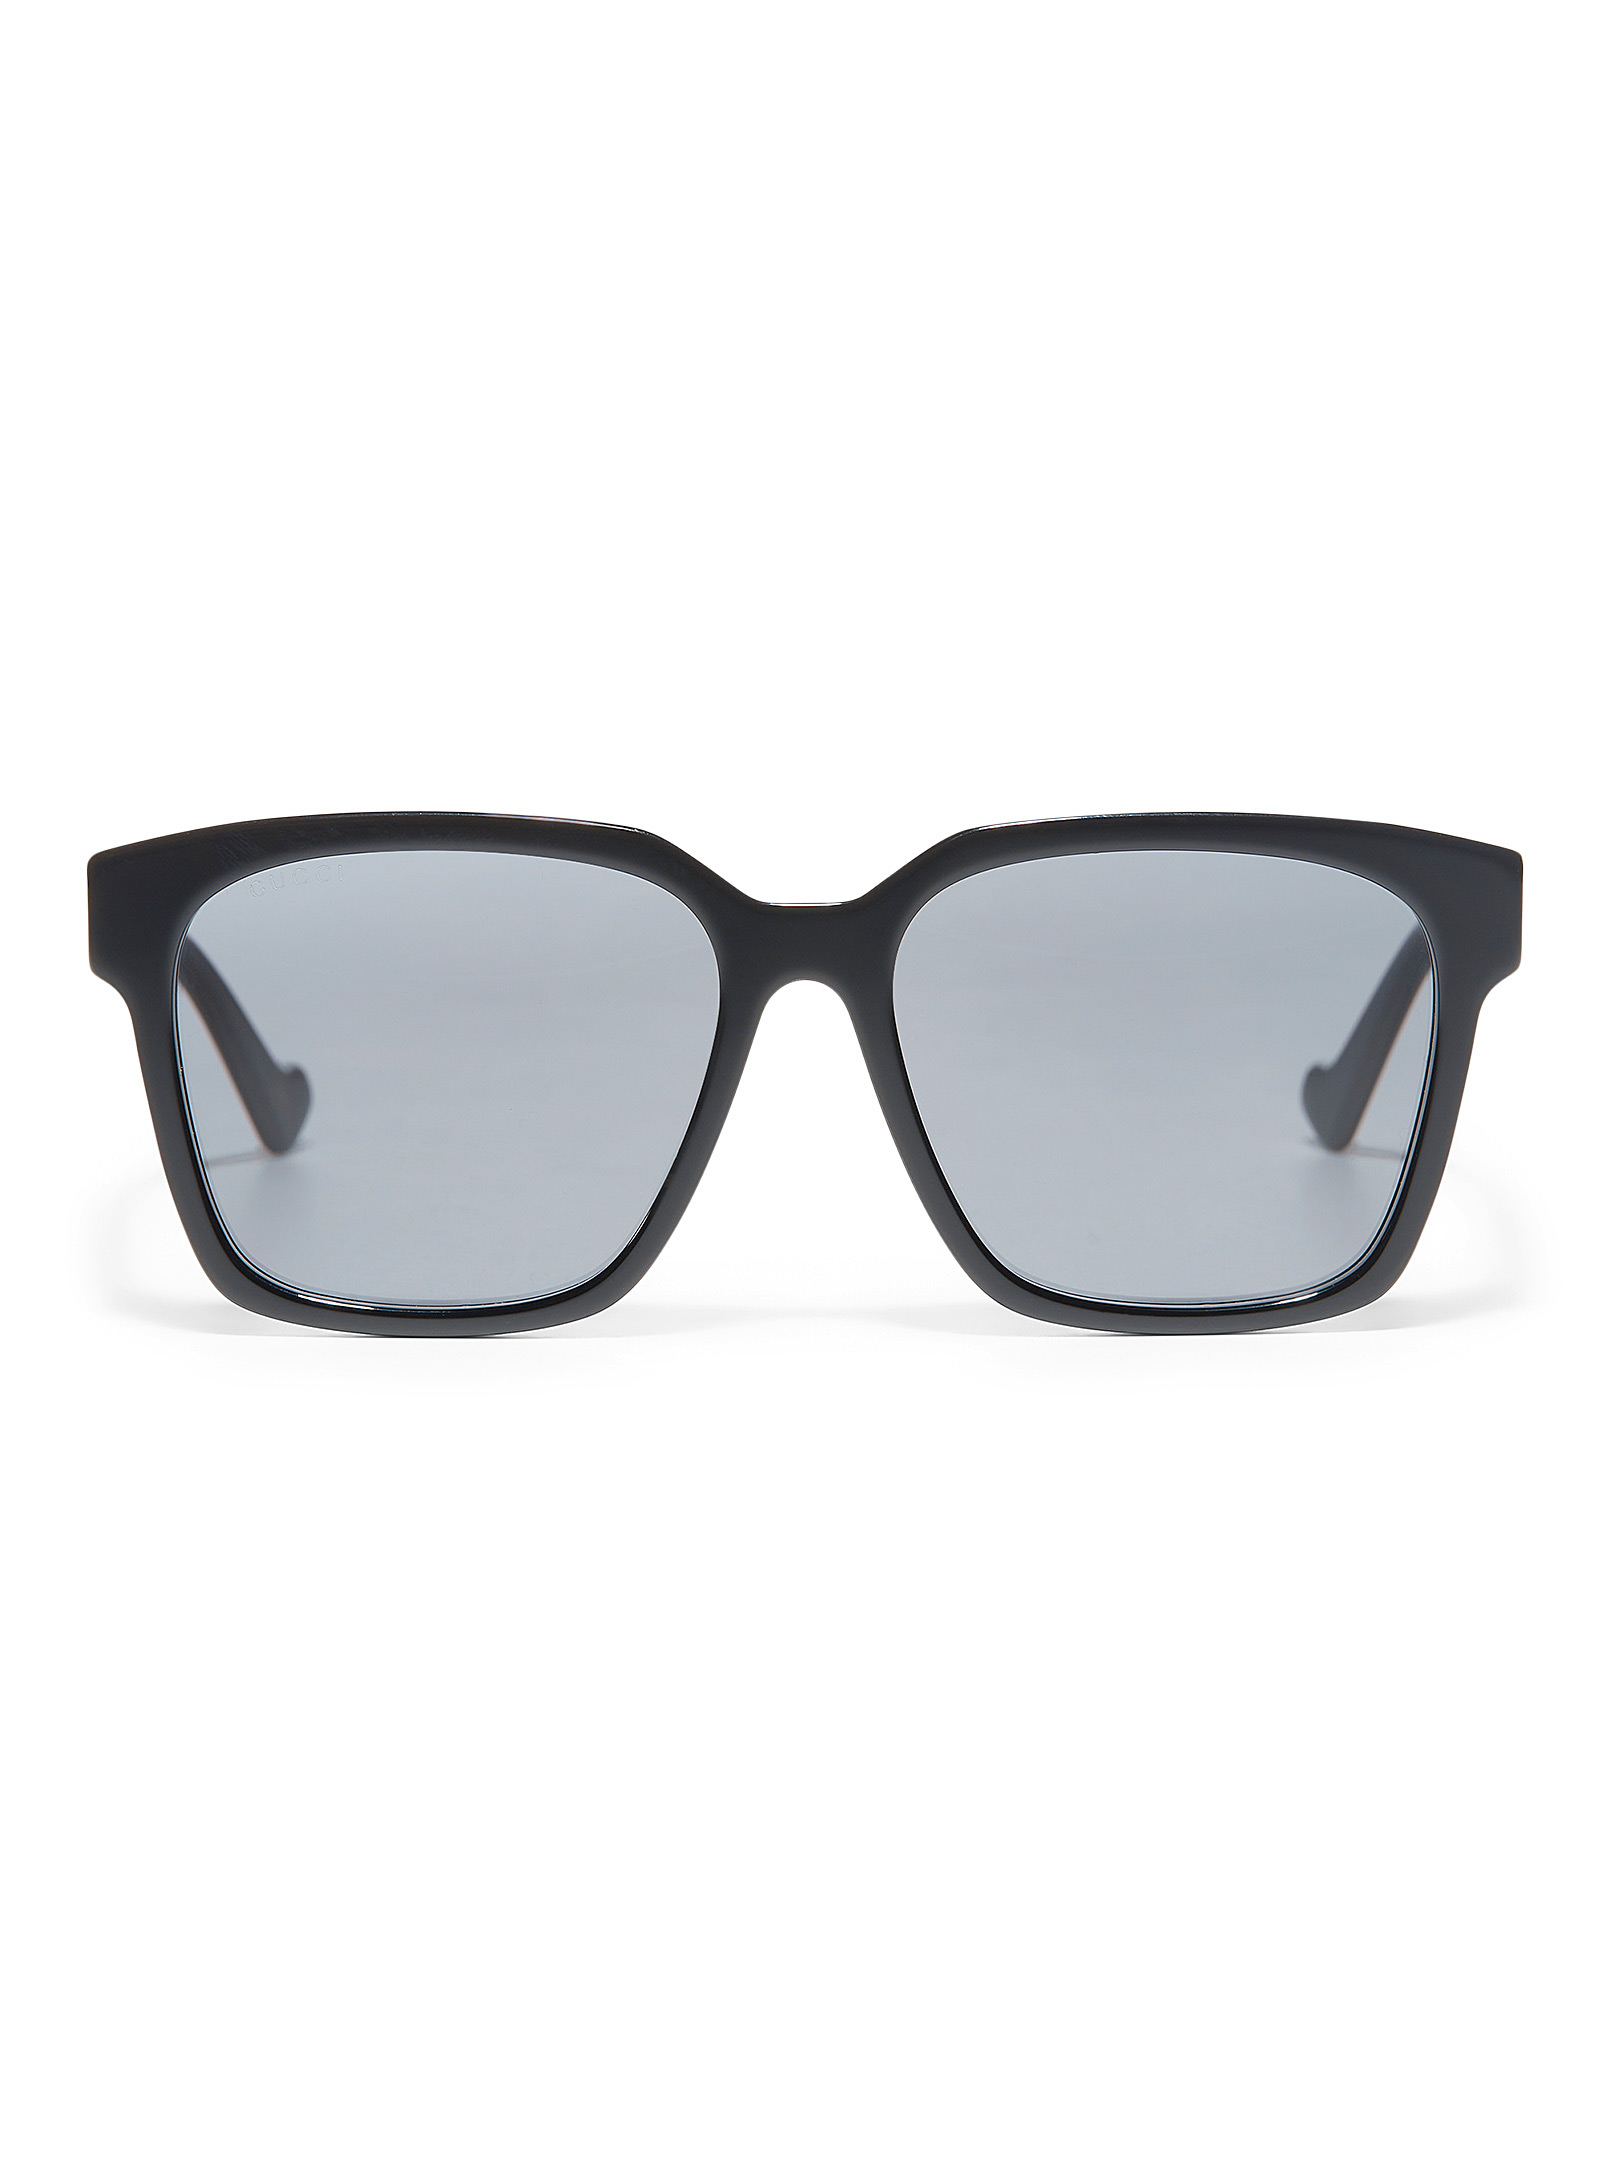 Gucci - Men's Black square sunglasses